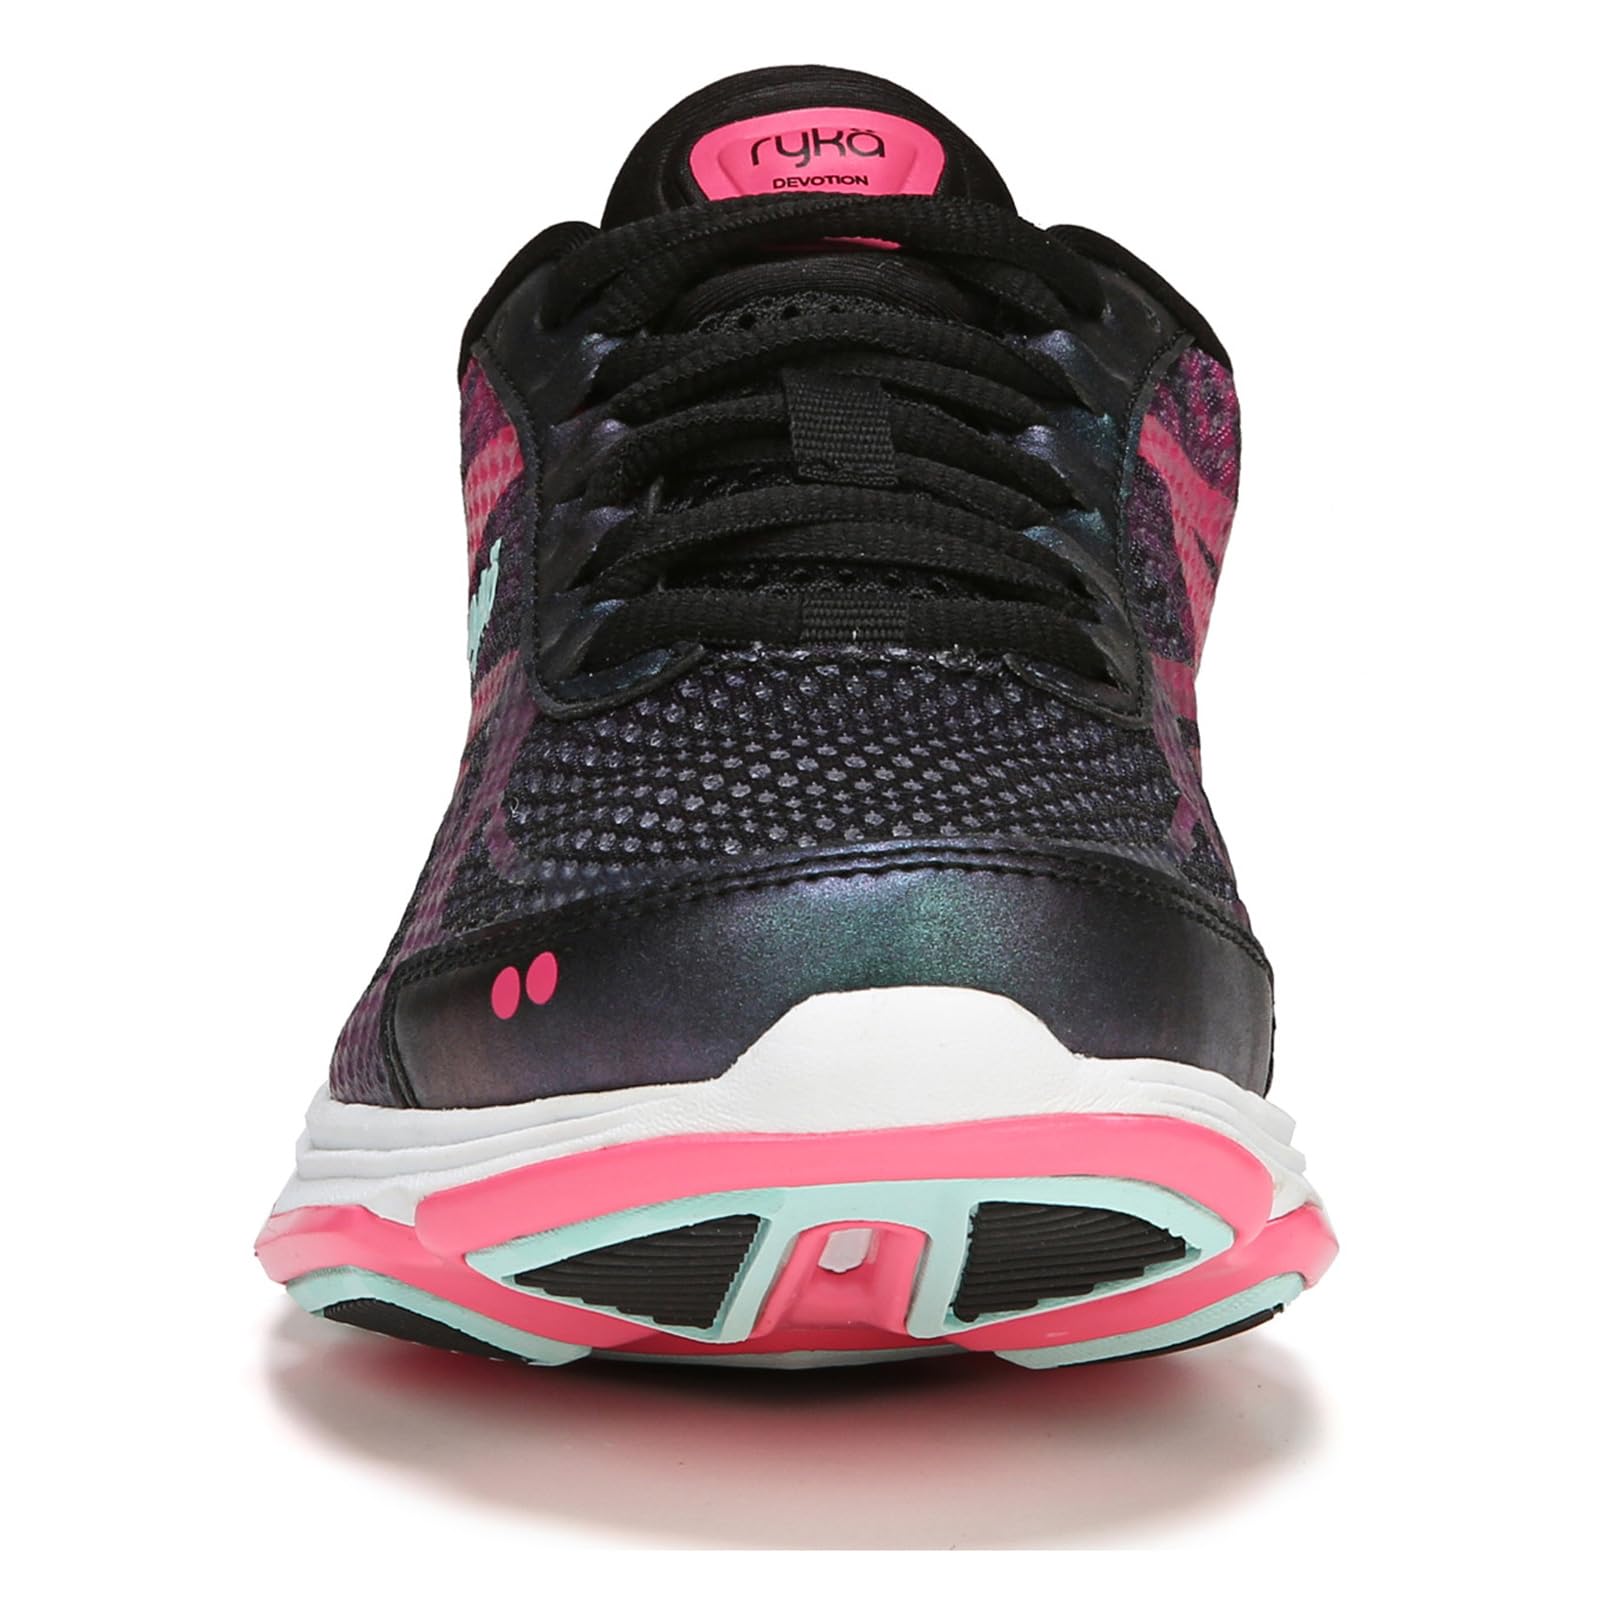 Ryka Women's Devotion Plus 2 Walking Shoe, Black Pink, 8.5 US